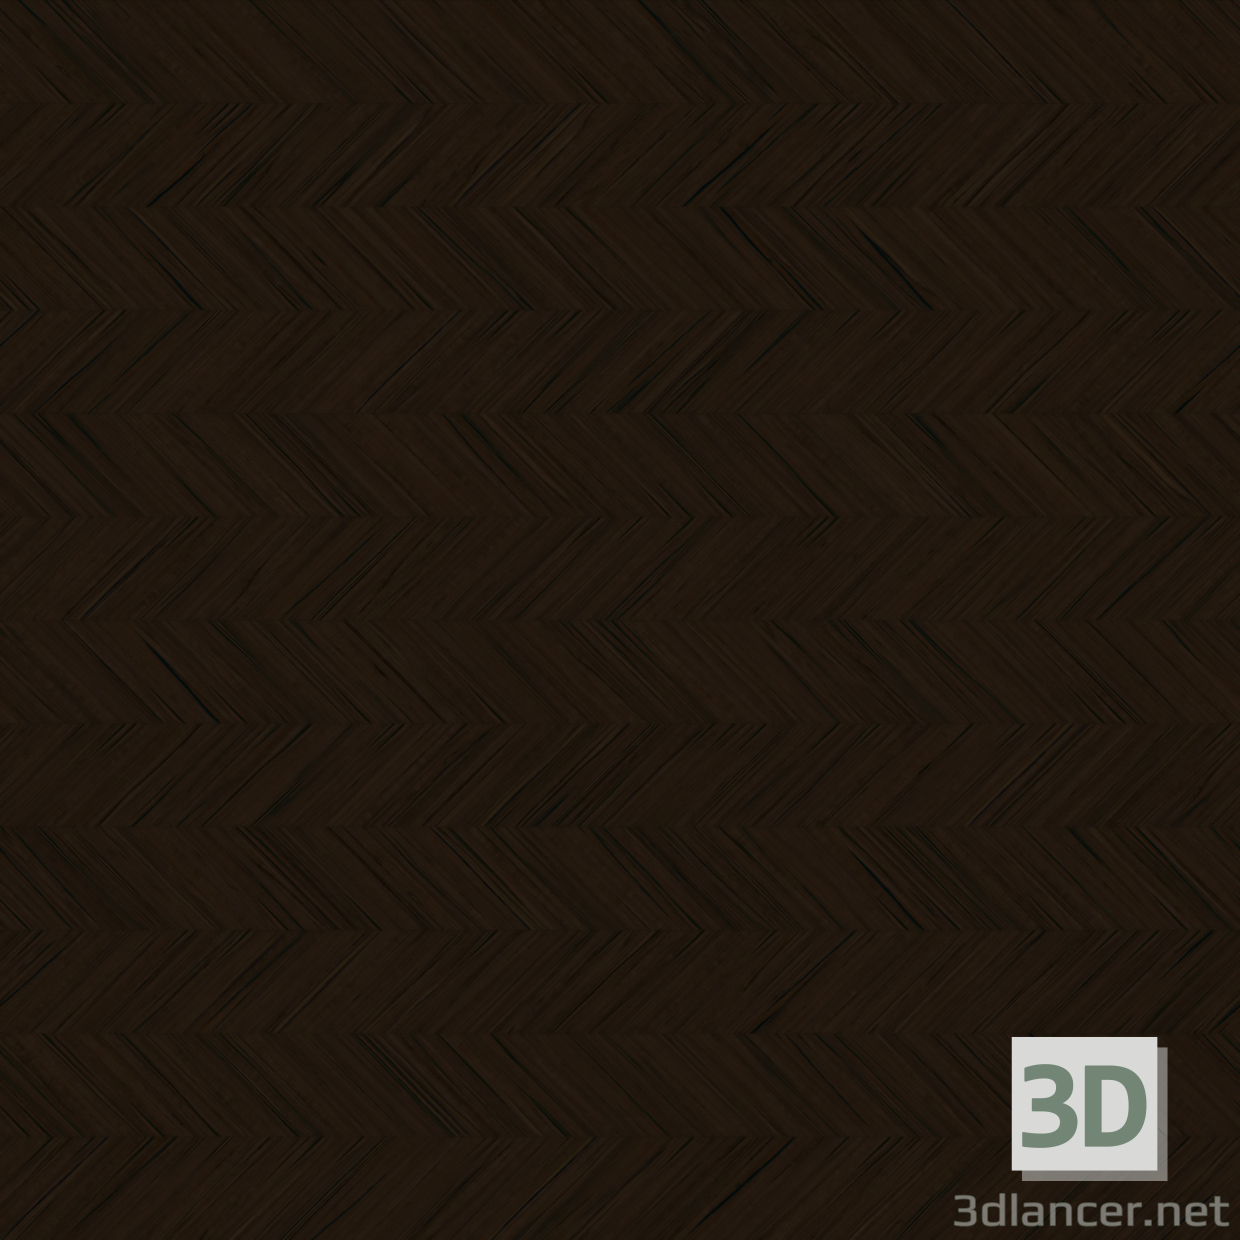 बनावट लकड़ी की छत 07 मुफ्त डाउनलोड - छवि